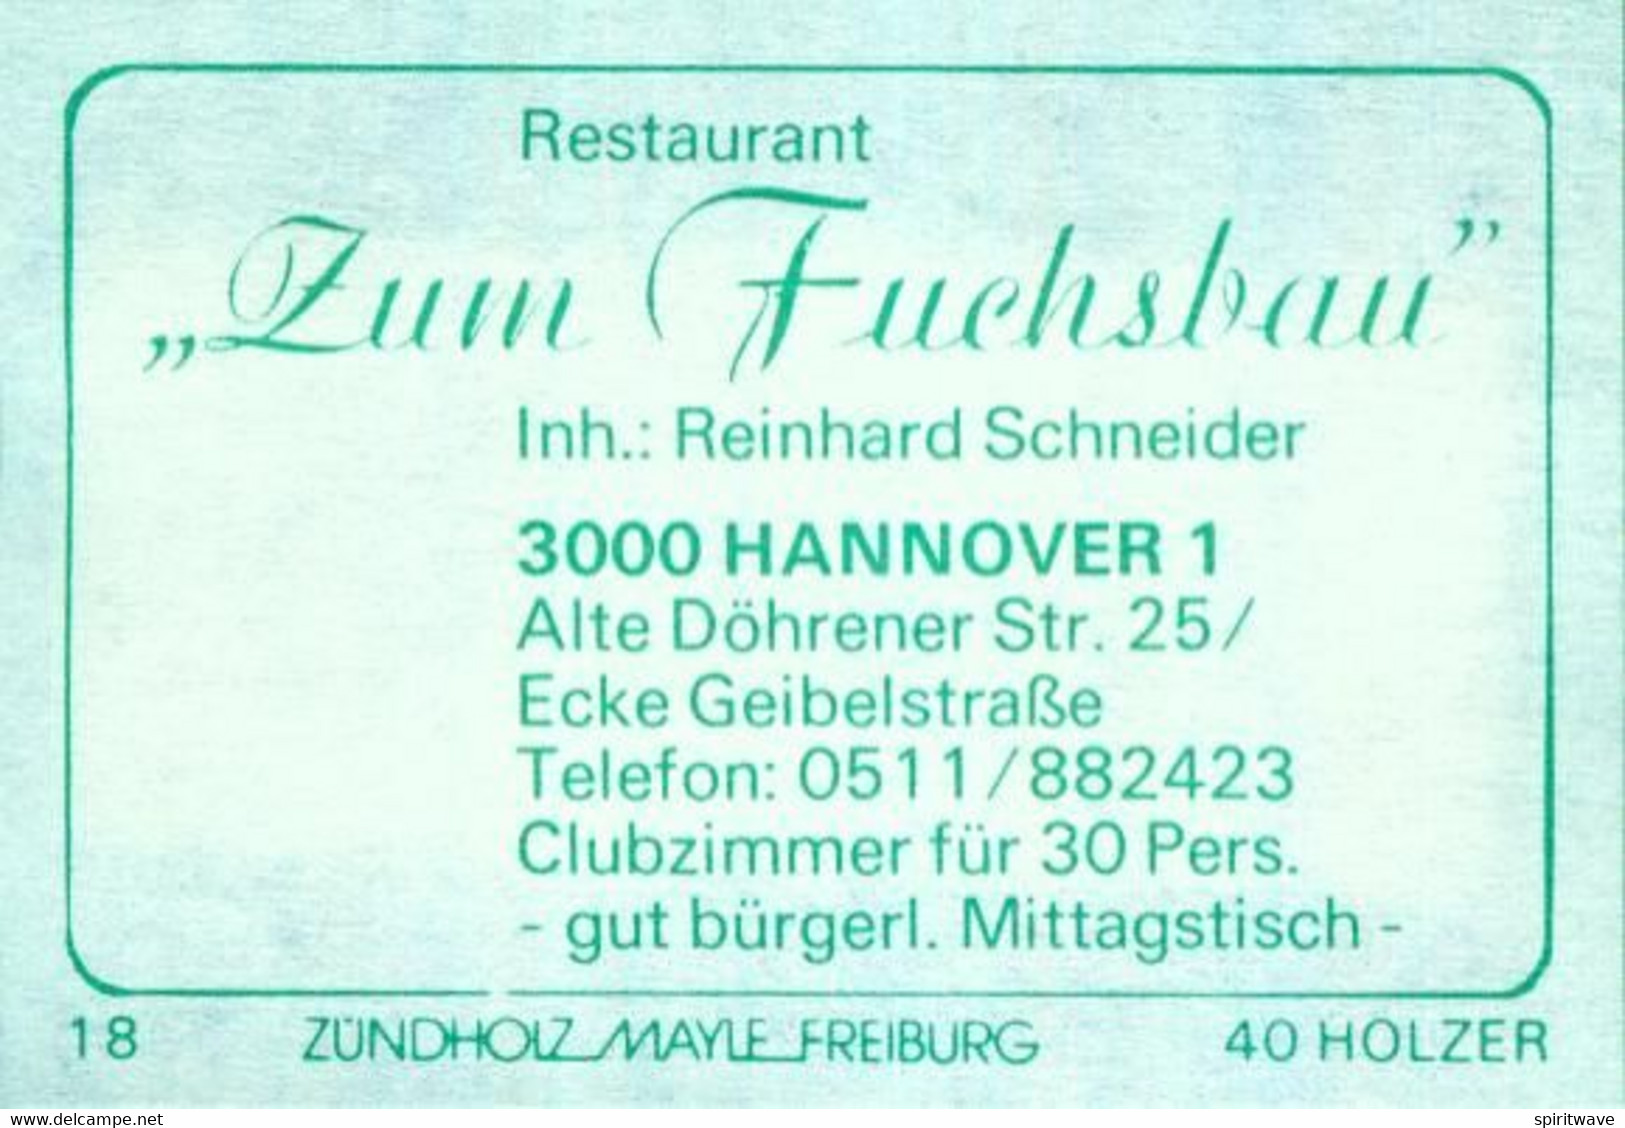 1 Altes Gasthausetikett, Restaurant „Zum Fuchsbau“, Inh.: Reinhard Schneider,3000 Hannover 1,Alte Döhrener Str. 25 #2654 - Zündholzschachteletiketten